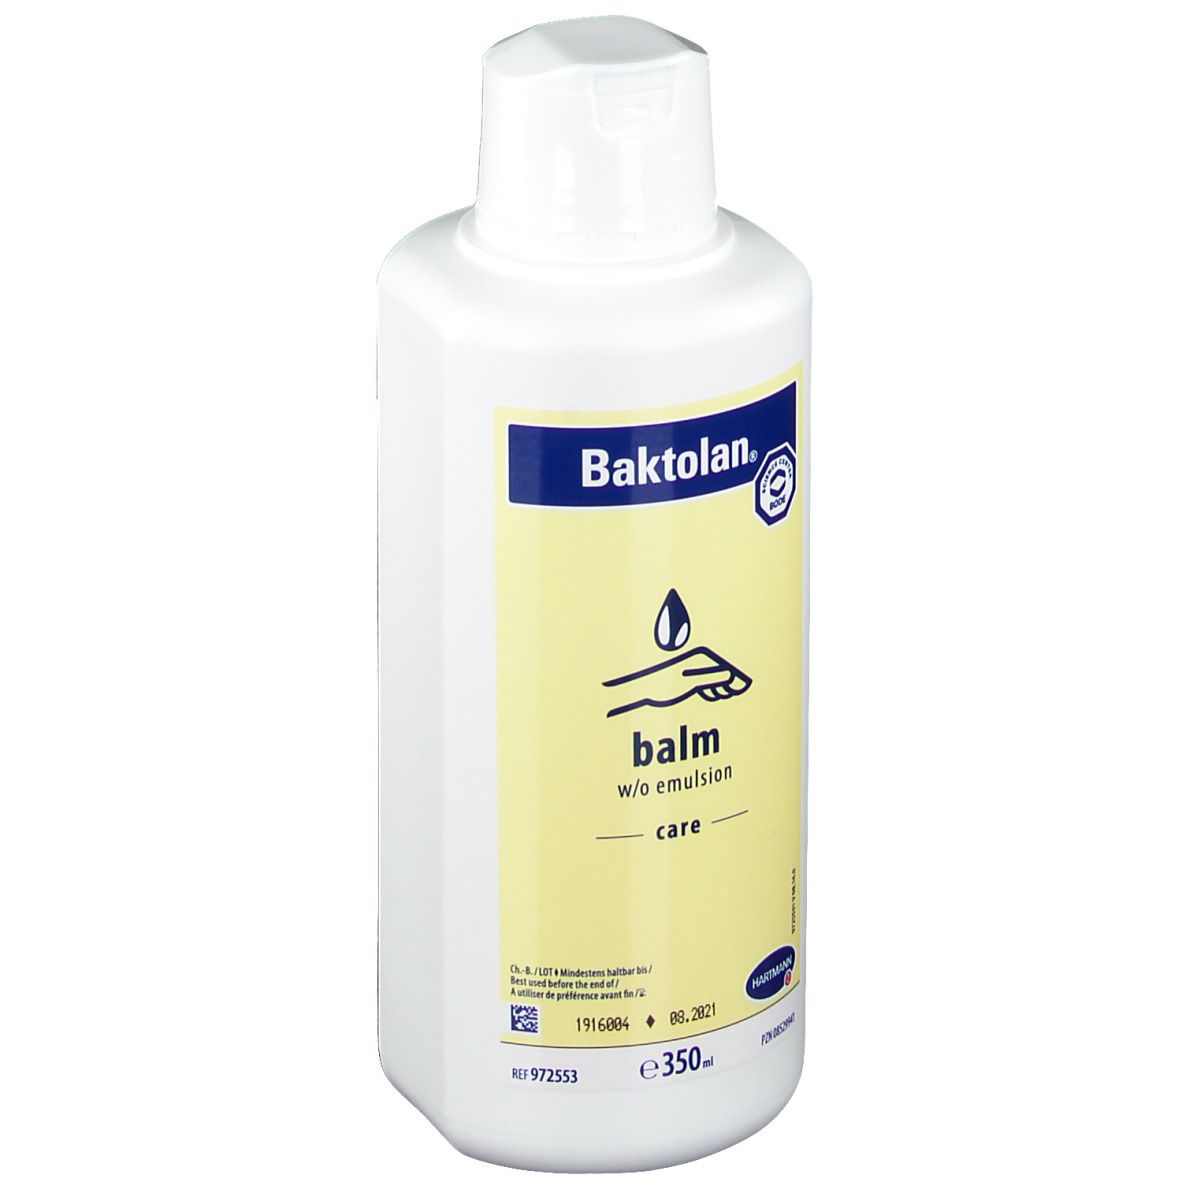 Baktolan® balm